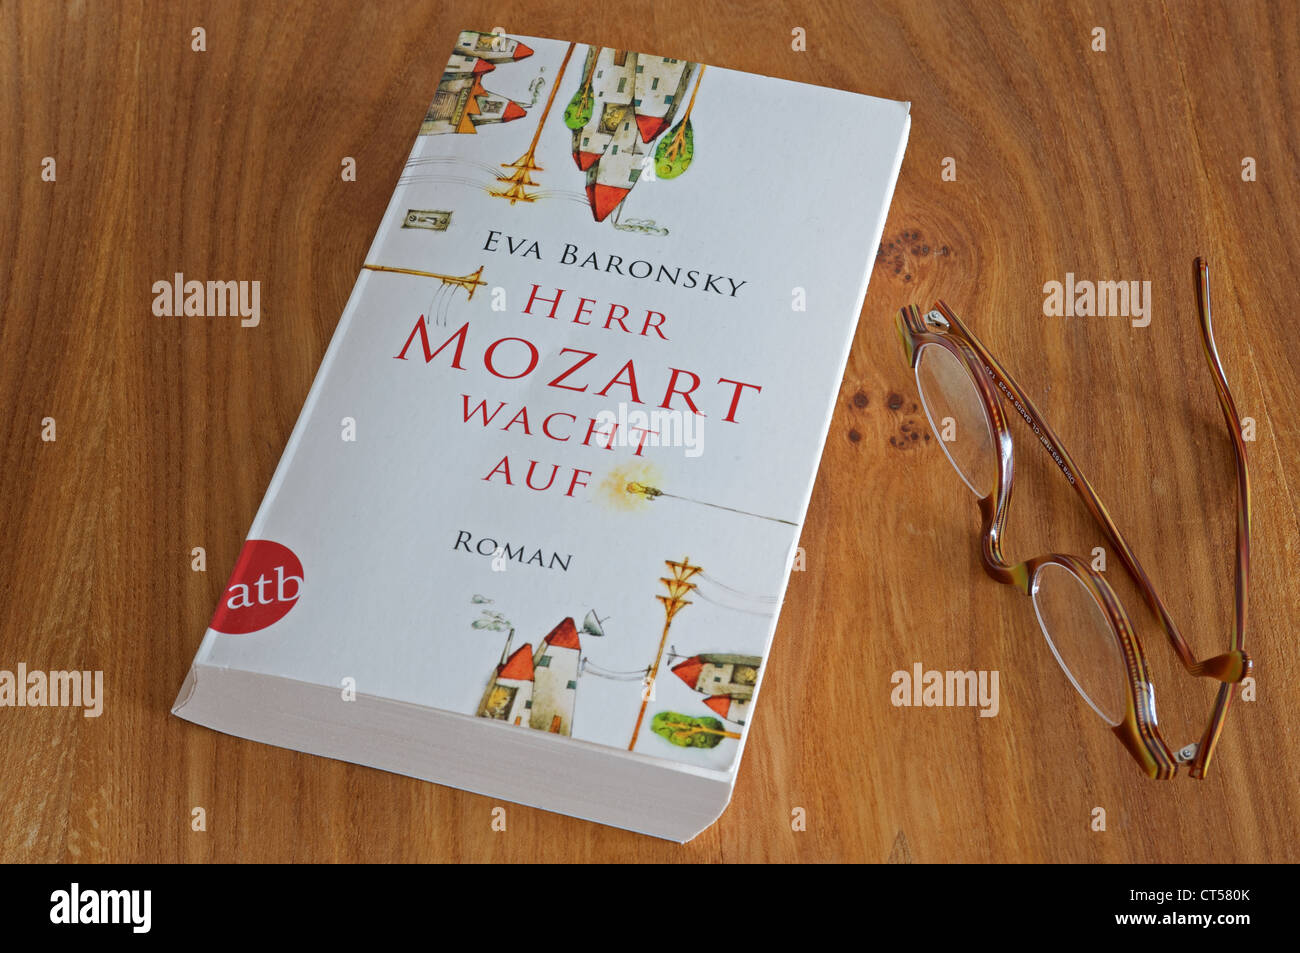 Herr Mozart wacht auf libro in brossura Foto Stock